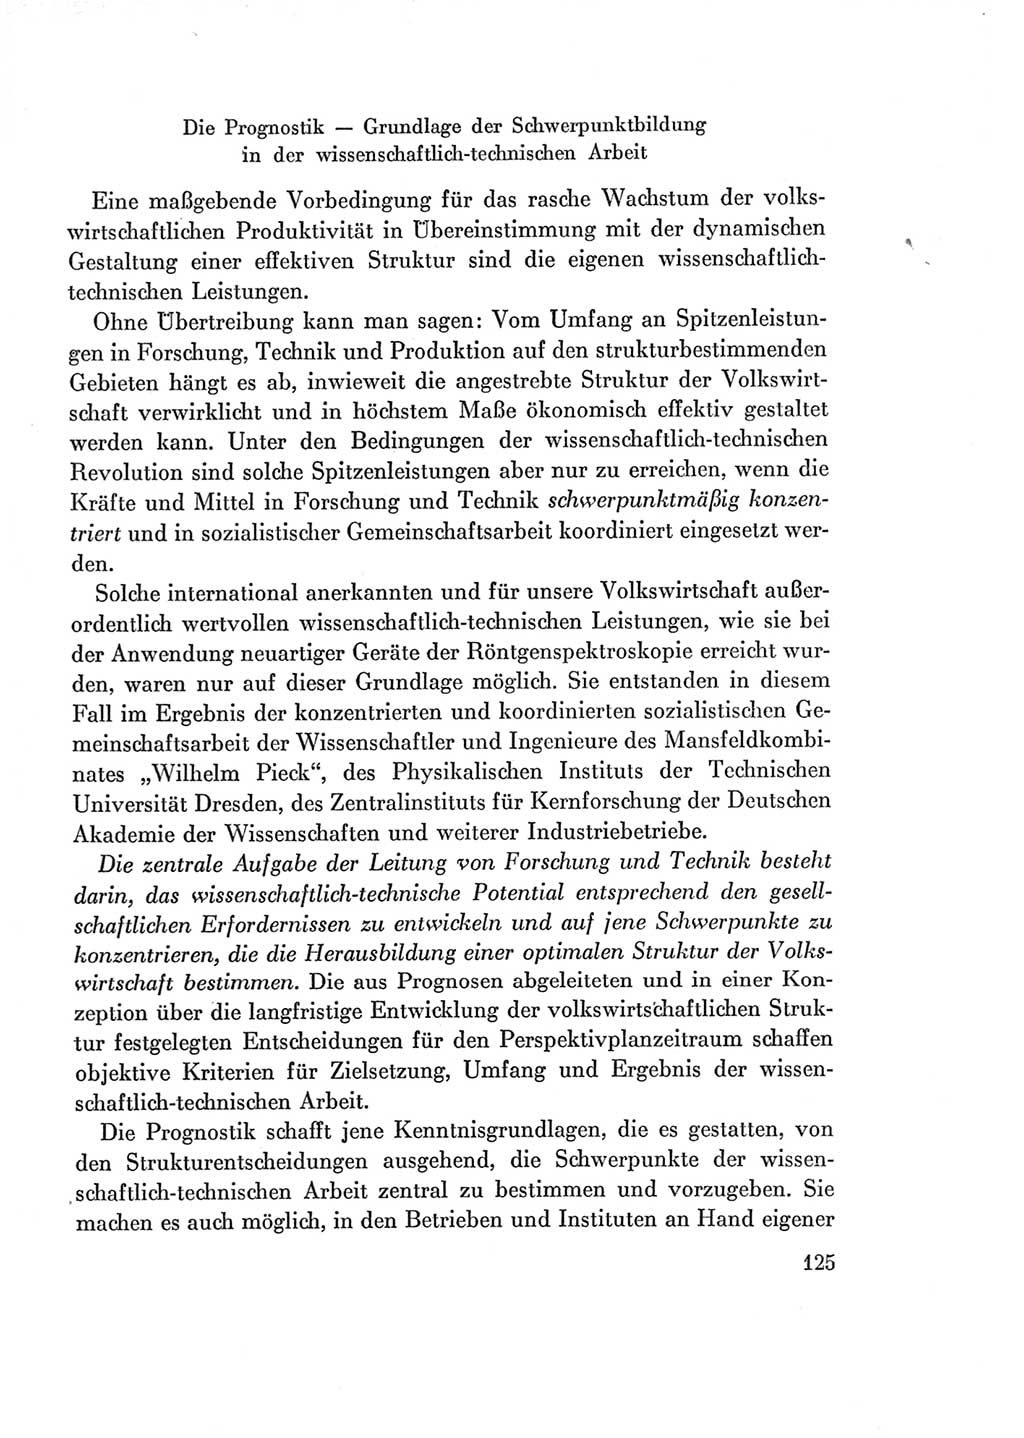 Protokoll der Verhandlungen des Ⅶ. Parteitages der Sozialistischen Einheitspartei Deutschlands (SED) [Deutsche Demokratische Republik (DDR)] 1967, Band Ⅰ, Seite 125 (Prot. Verh. Ⅶ. PT SED DDR 1967, Bd. Ⅰ, S. 125)